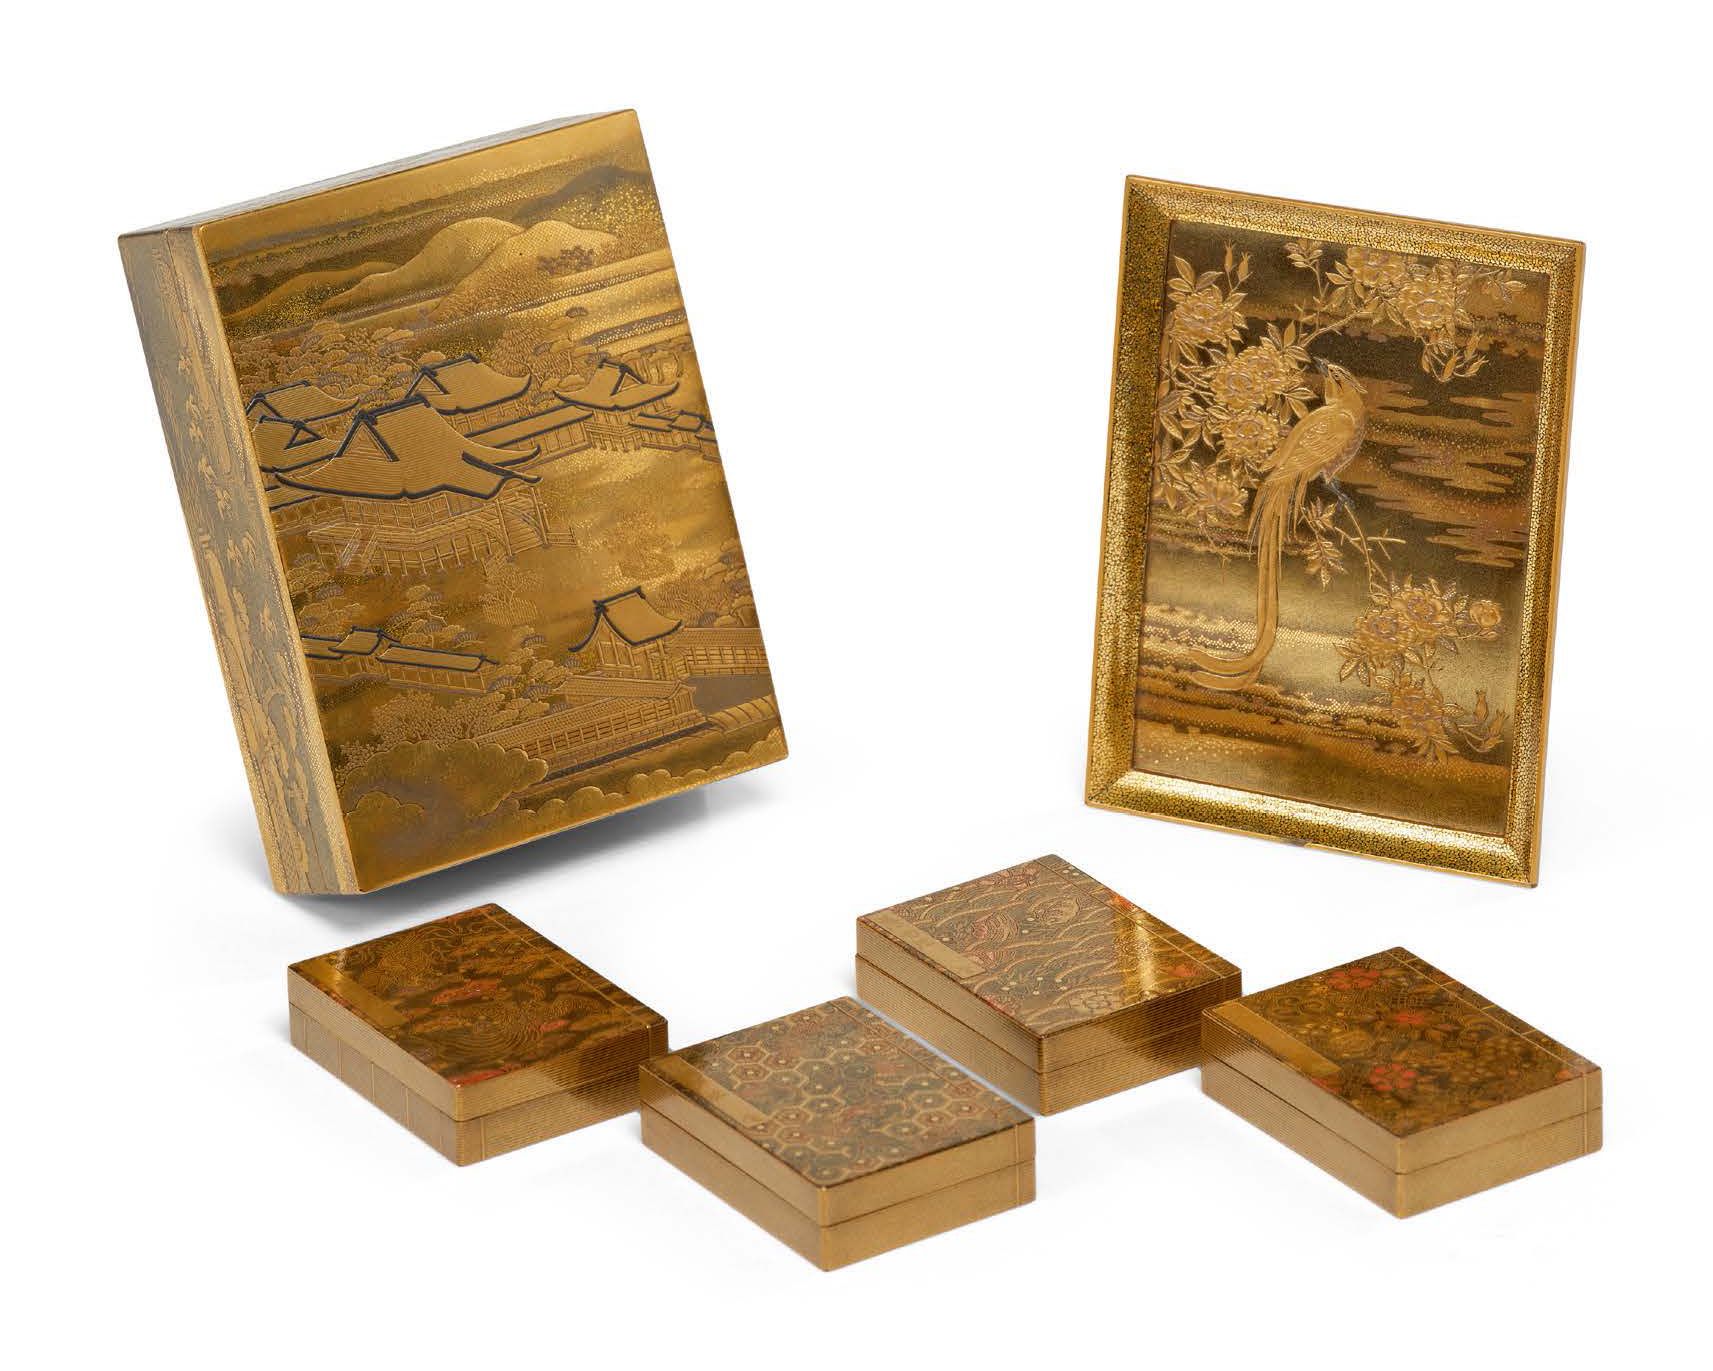 JAPON PÉRIODE EDO, XVIIIe SIÈCLE 日本 明治时代 18世纪
带莳绘，平莳绘及金银漆装饰的长方形香盒